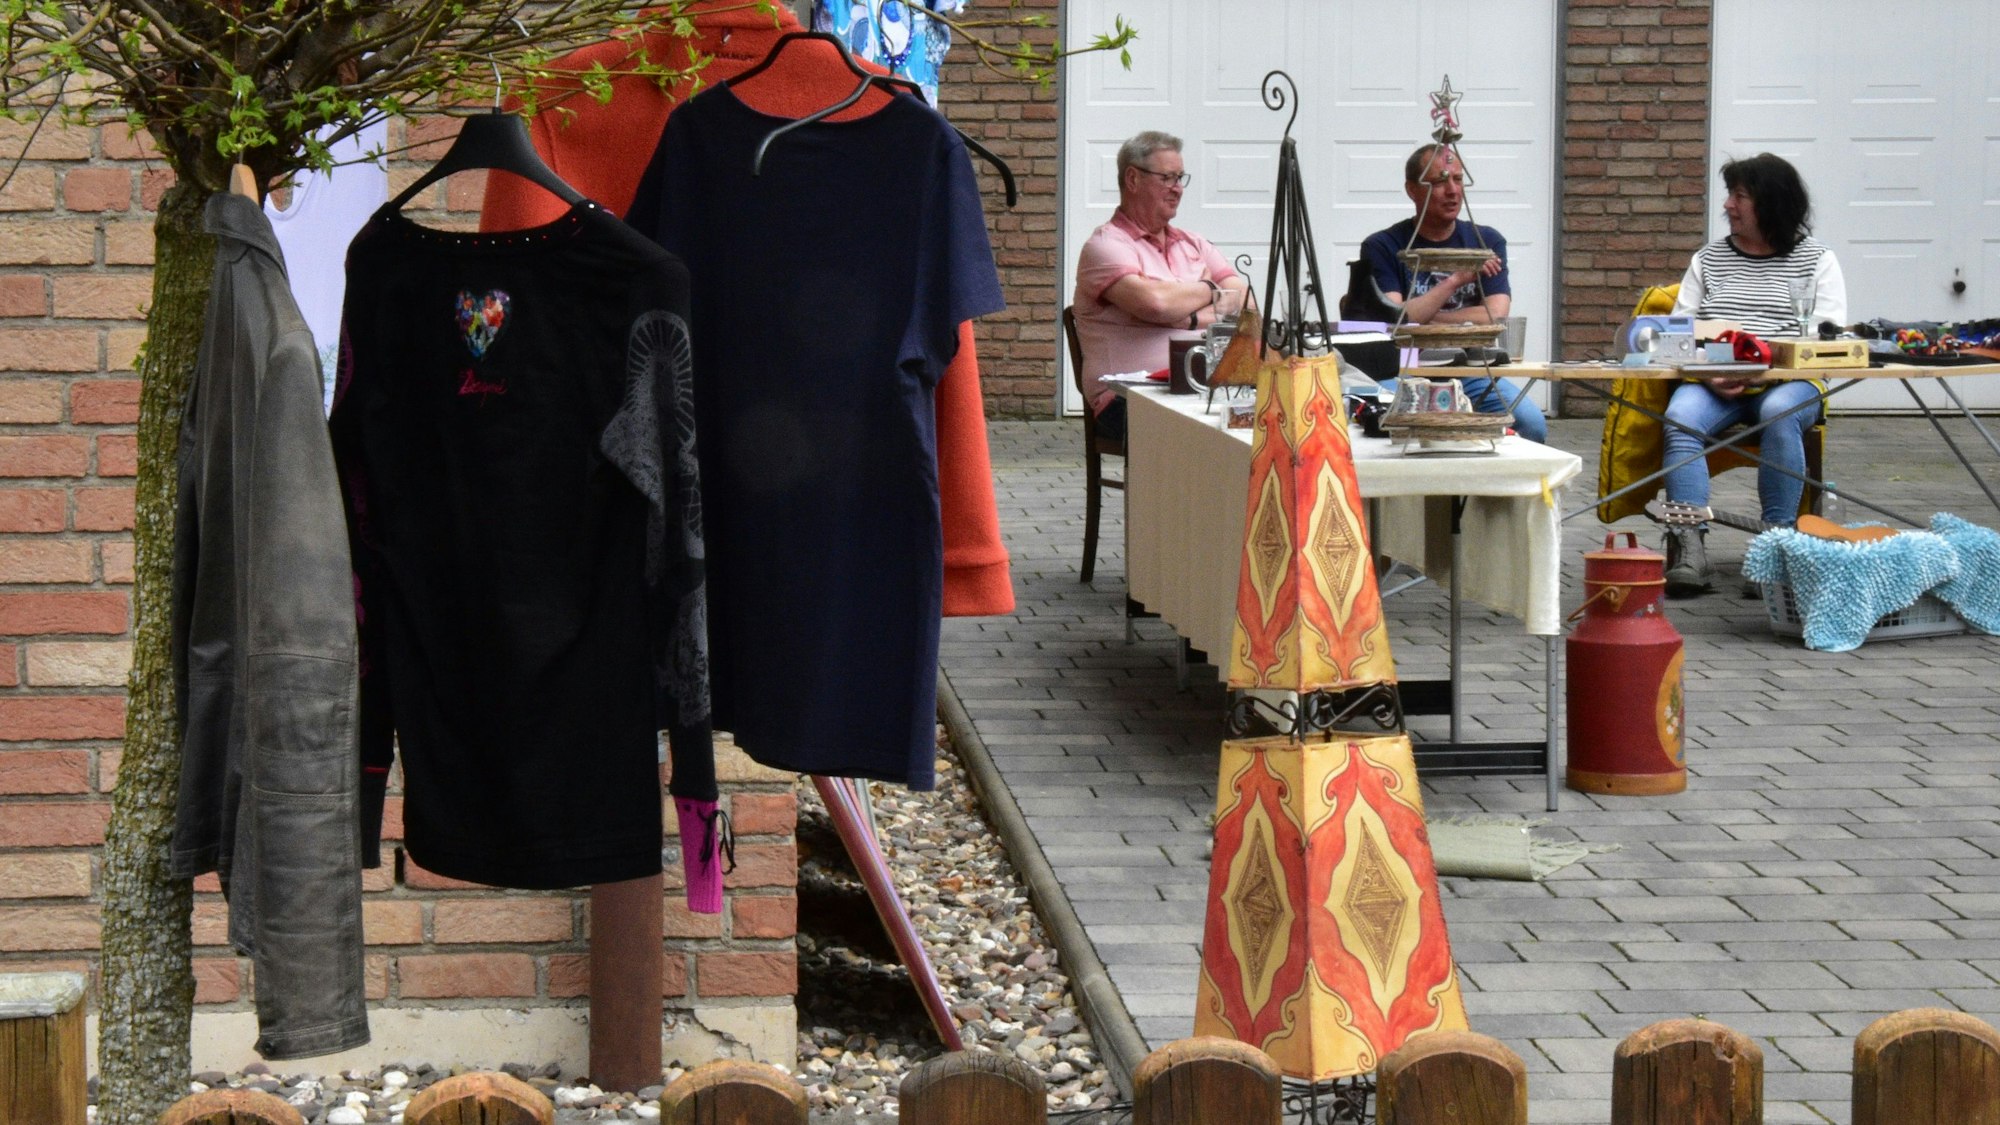 Klamotten gab es auf dem Gassenflohmarkt in Sankt Augustin-Birlinghoven.